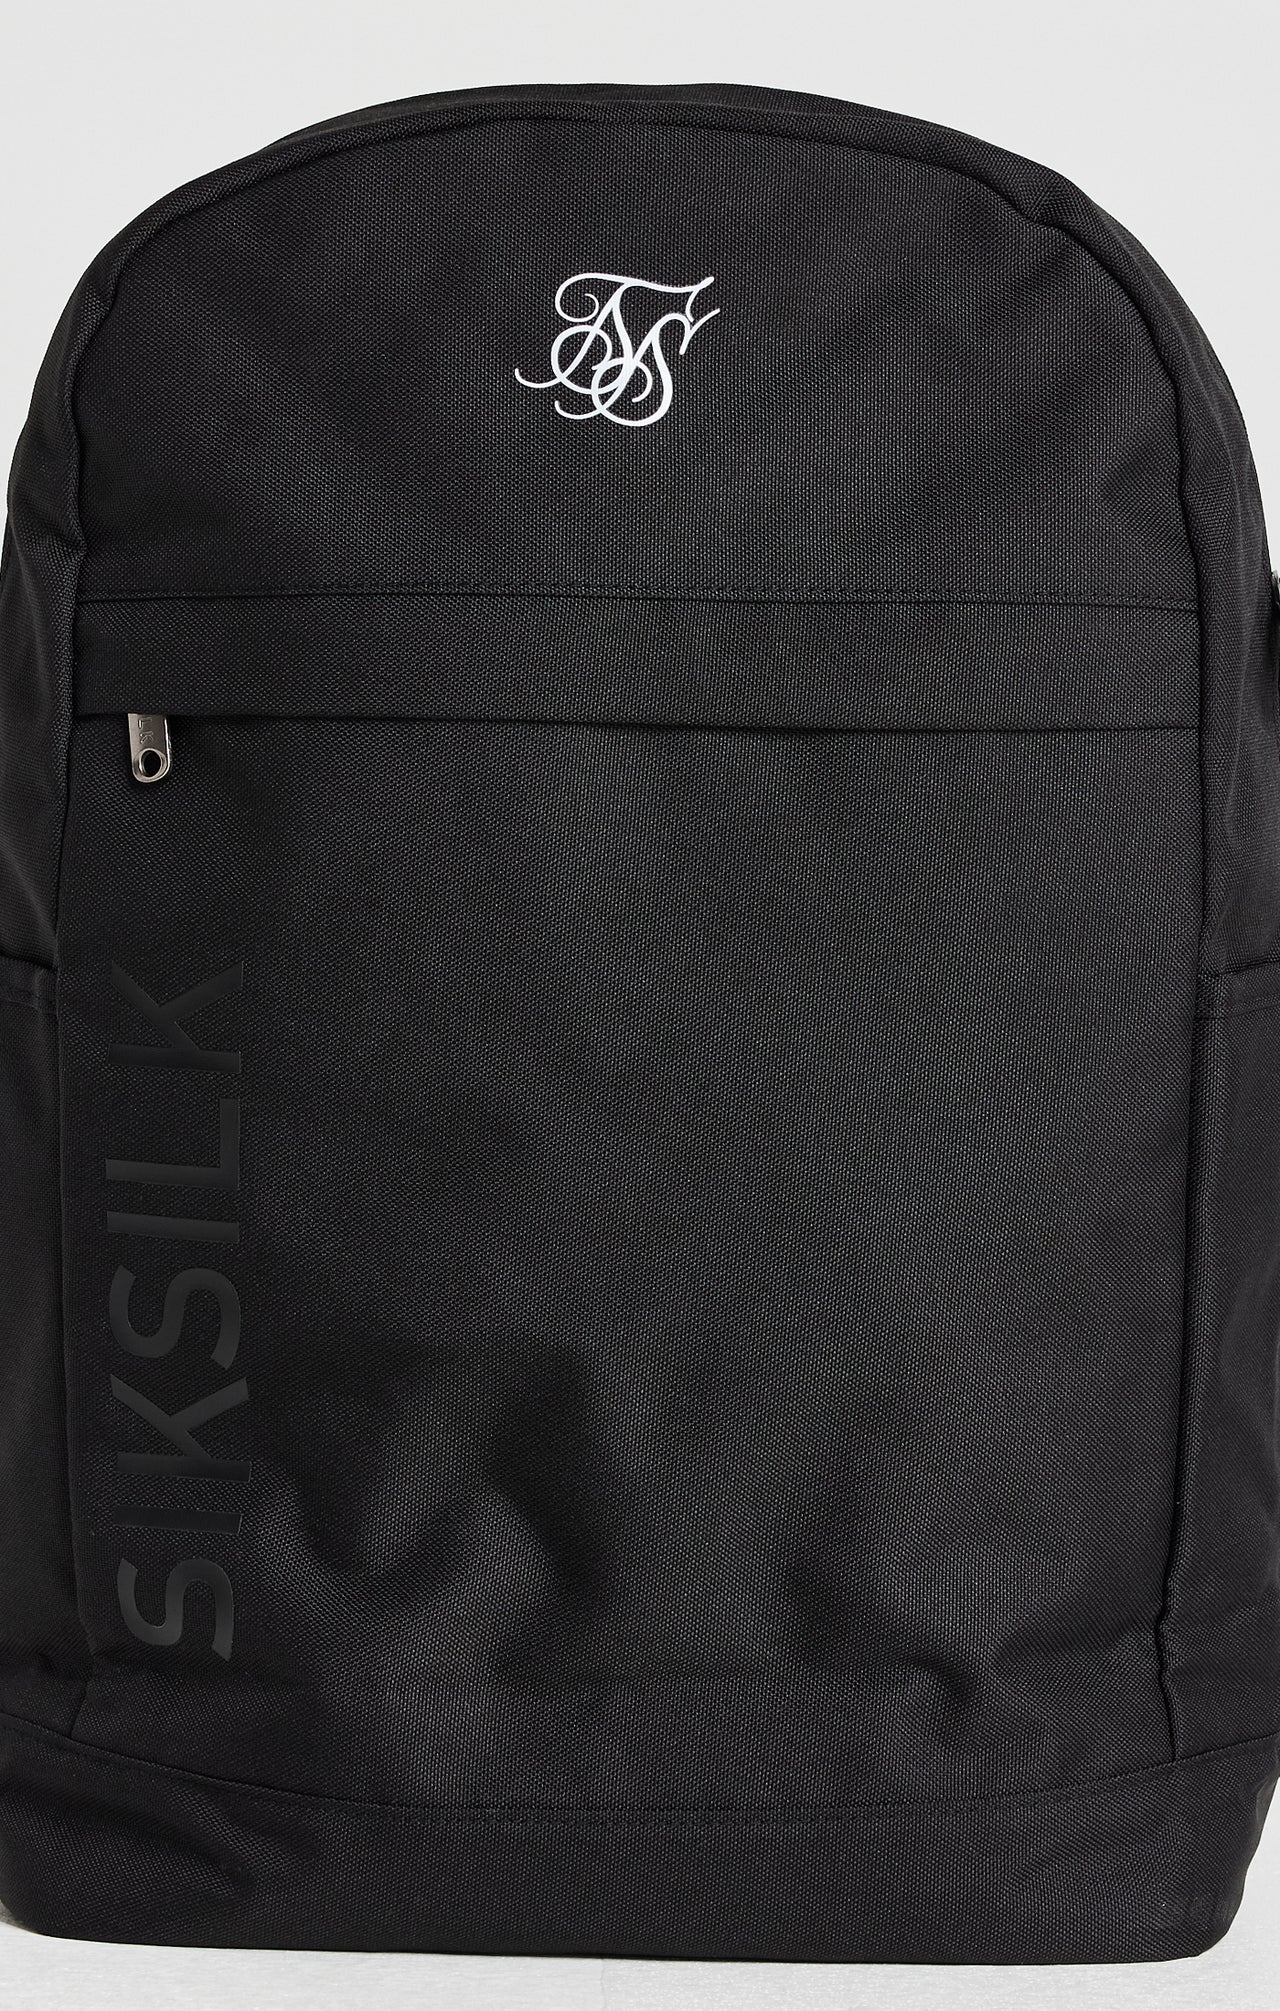 Black Essential Backpack (1)